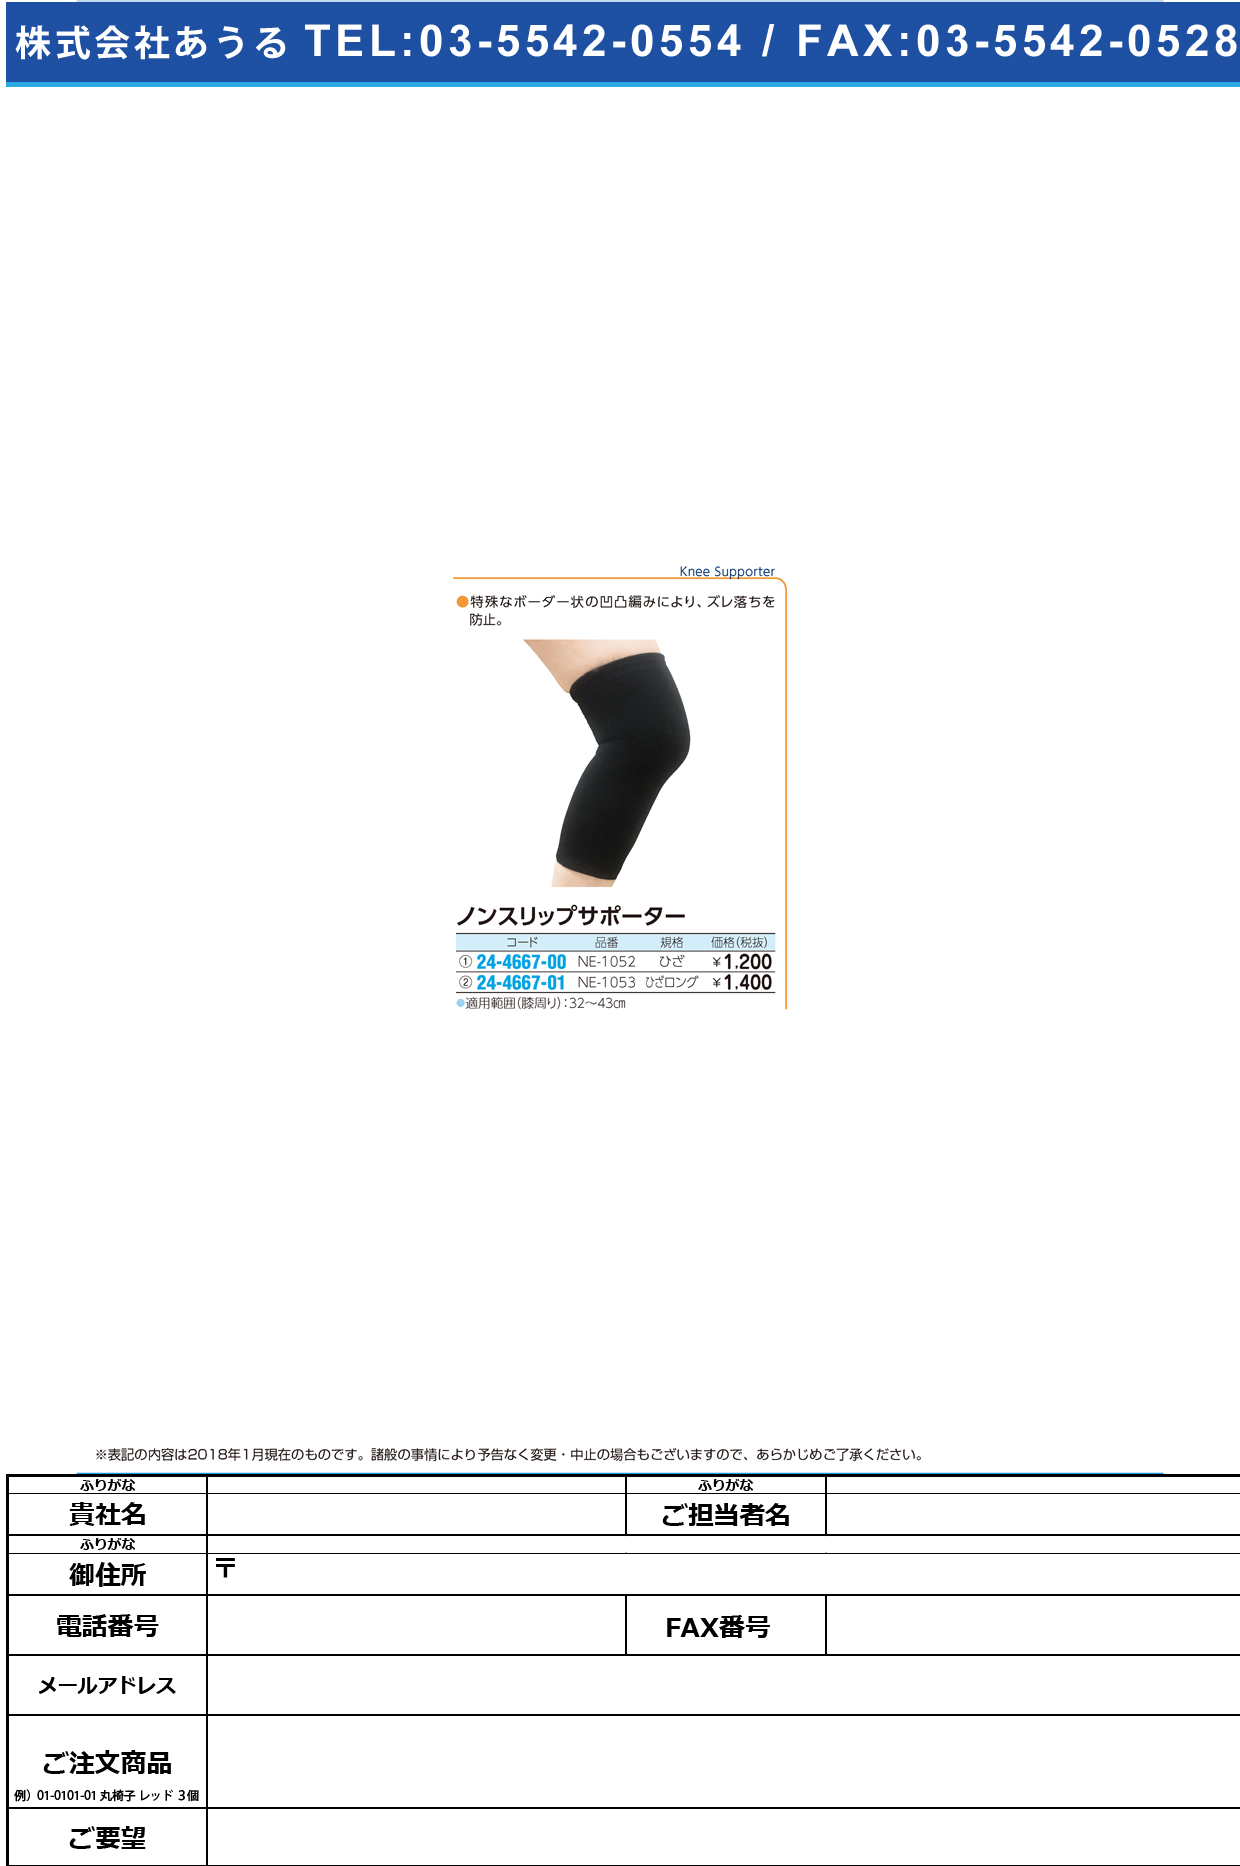 (24-4667-00)ノンスリップサポーターひざ NE-1052(ﾌﾞﾗｯｸ) ﾉﾝｽﾘｯﾌﾟｻﾎﾟｰﾀｰ(日本衛材)【1枚単位】【2018年カタログ商品】